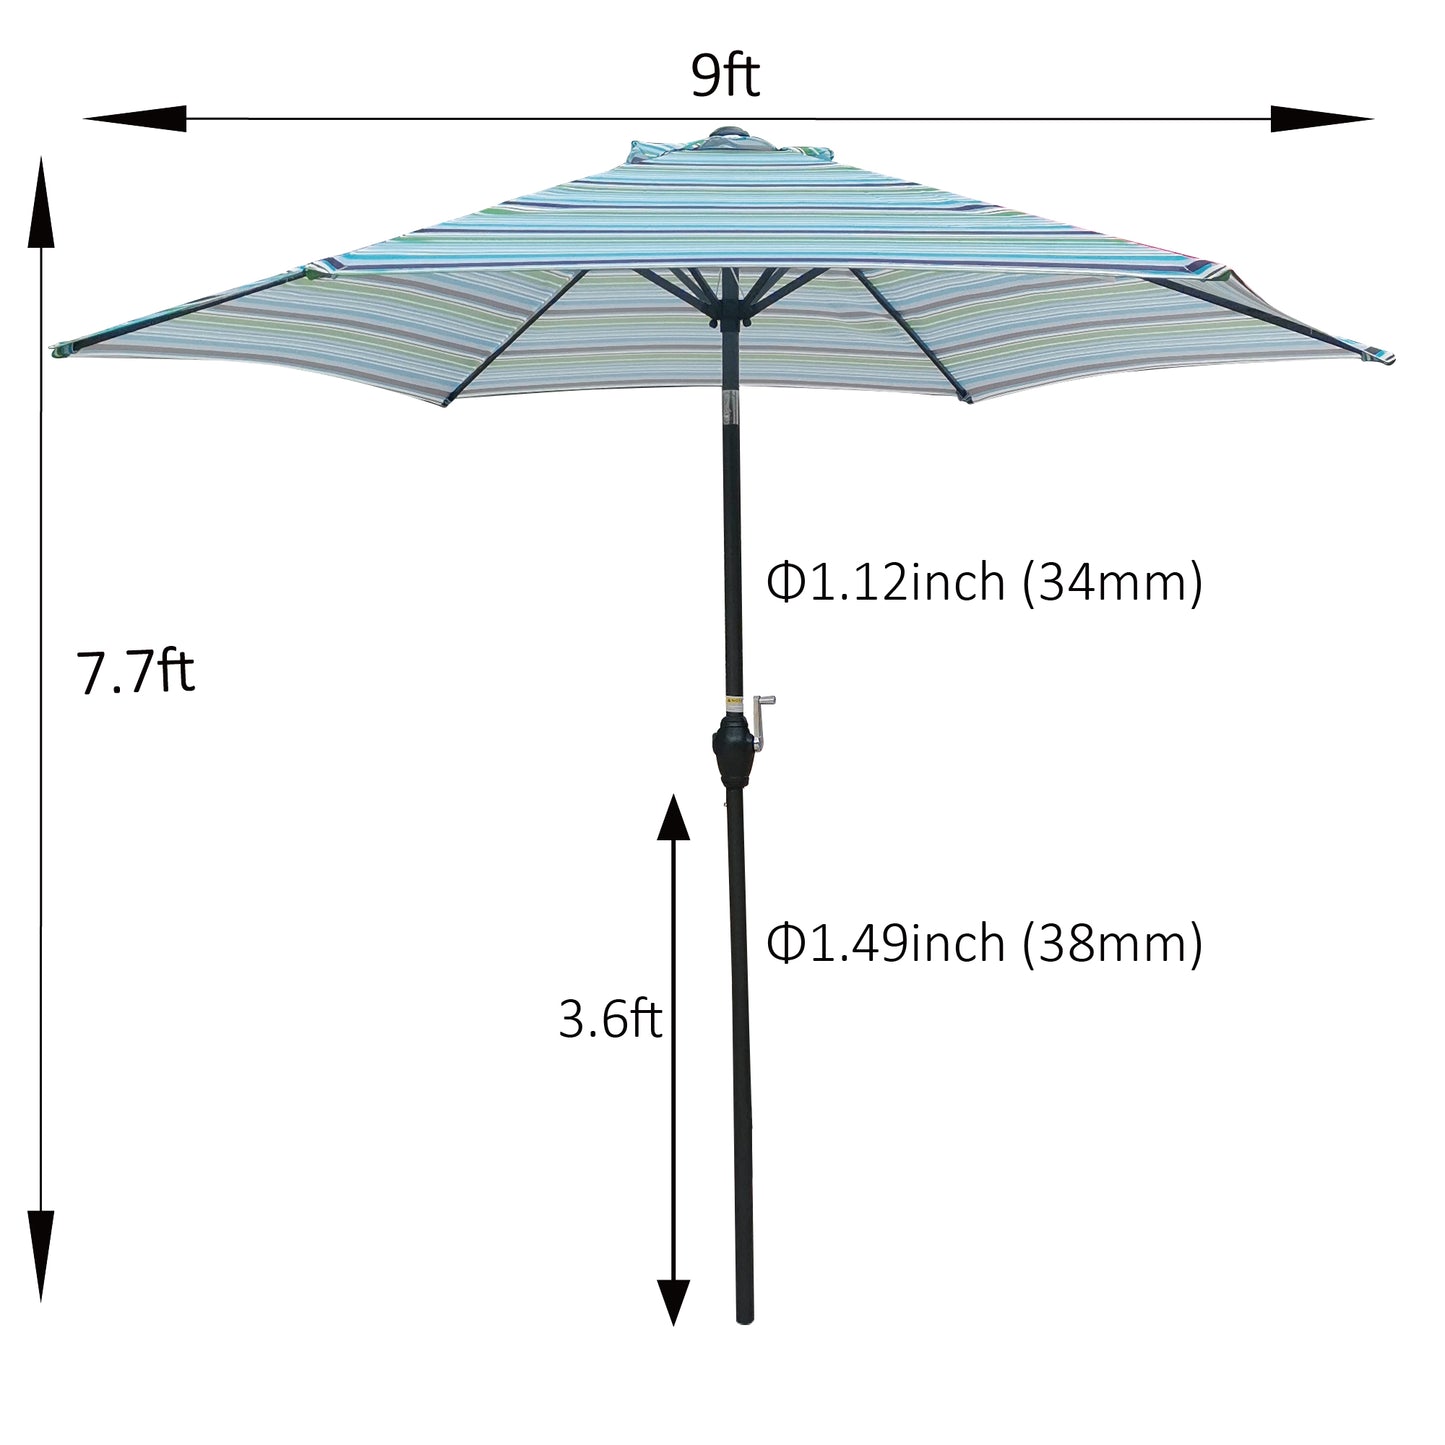 High-Quality Blue Stripes Outdoor Patio Umbrella